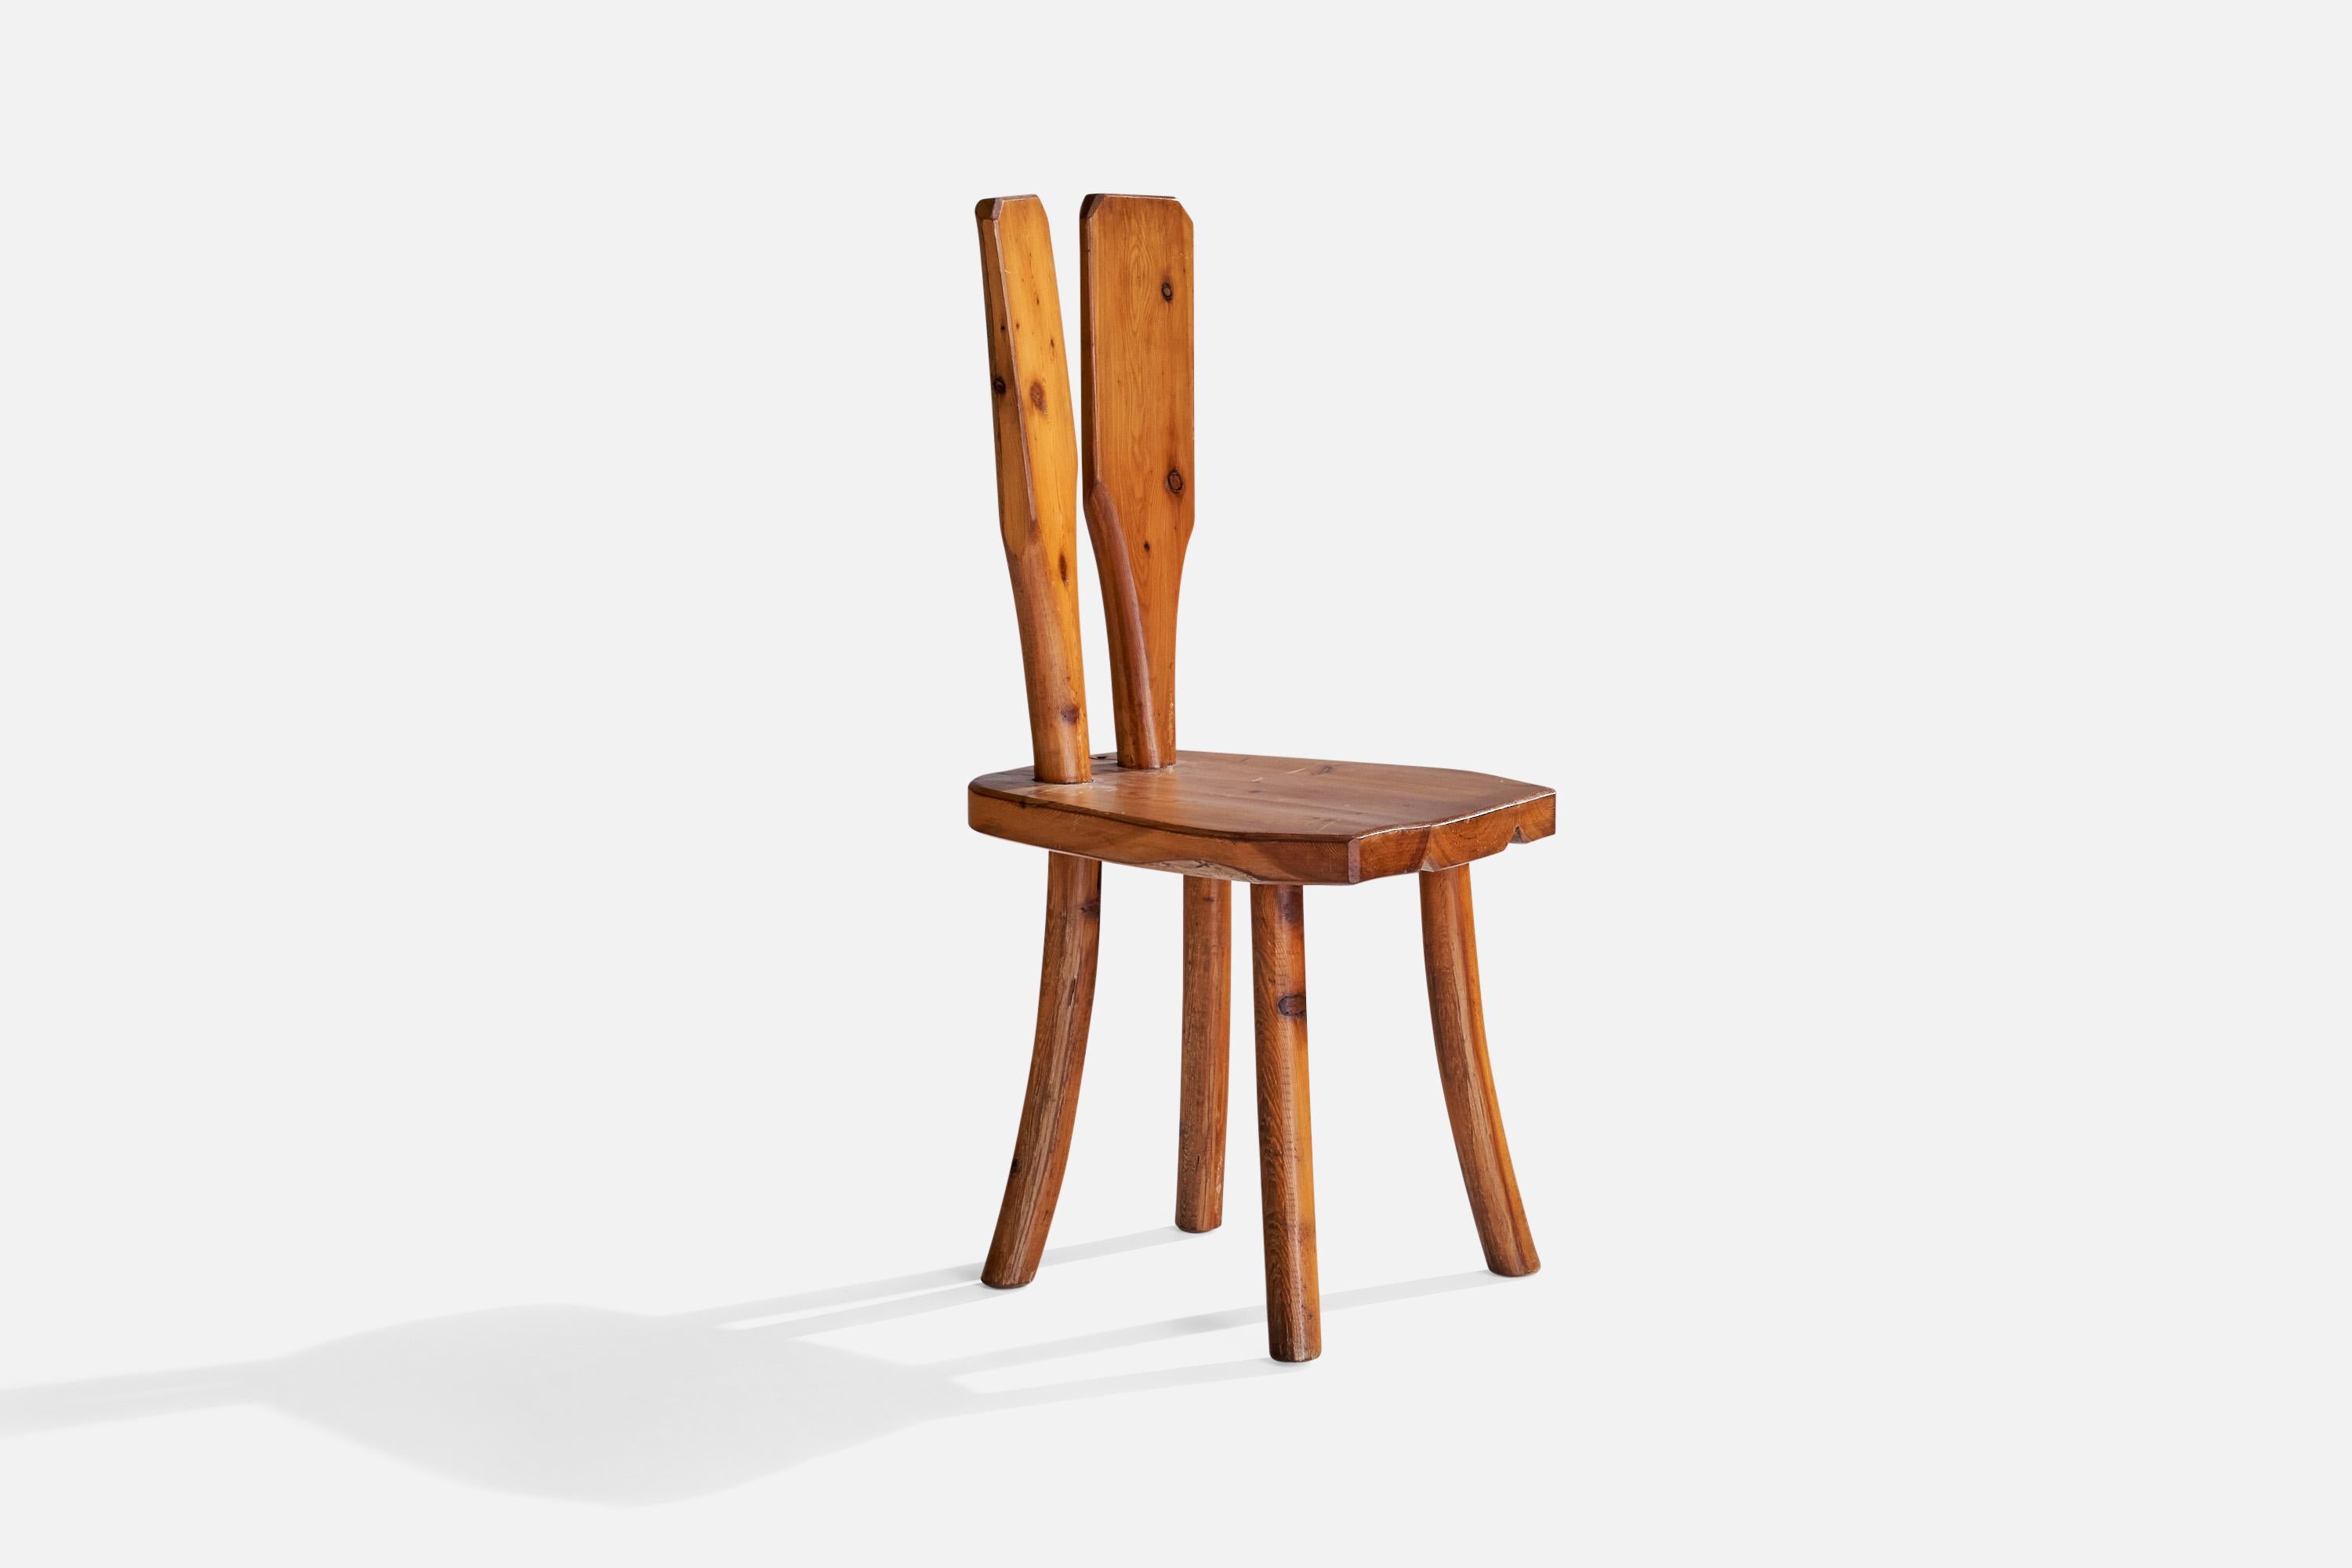 Ein Beistellstuhl aus Kiefernholz, entworfen und hergestellt in Italien, 1950er Jahre.

Sitzhöhe 17,75